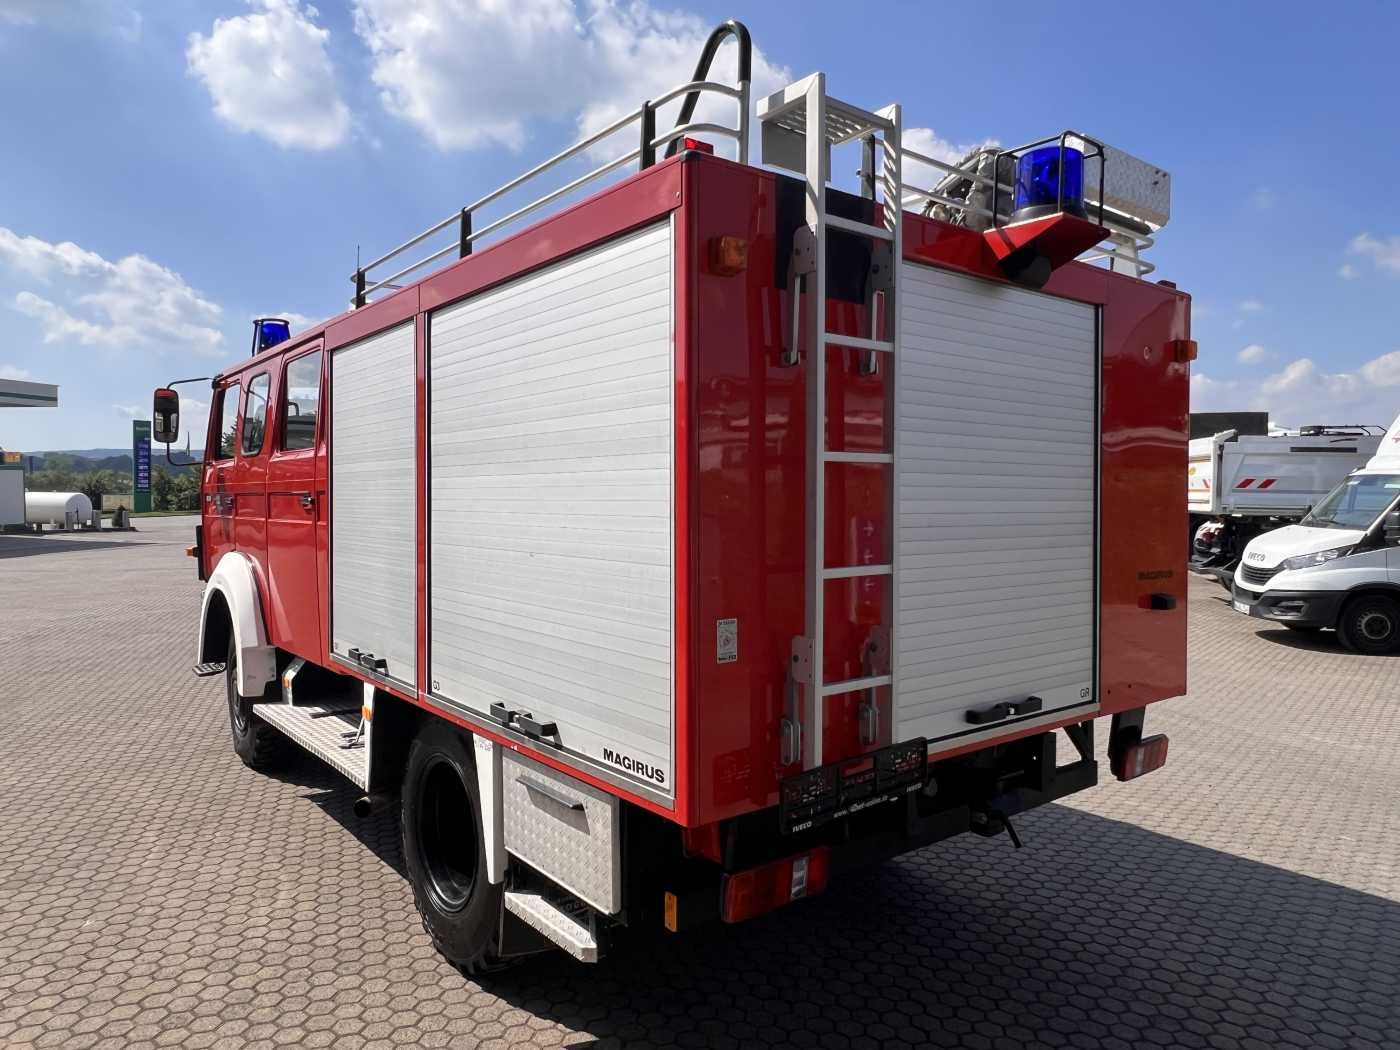 Fahrzeugabbildung Iveco 90-16 AW 4x4 LF8 Feuerwehr Standheizung 9 Sitze